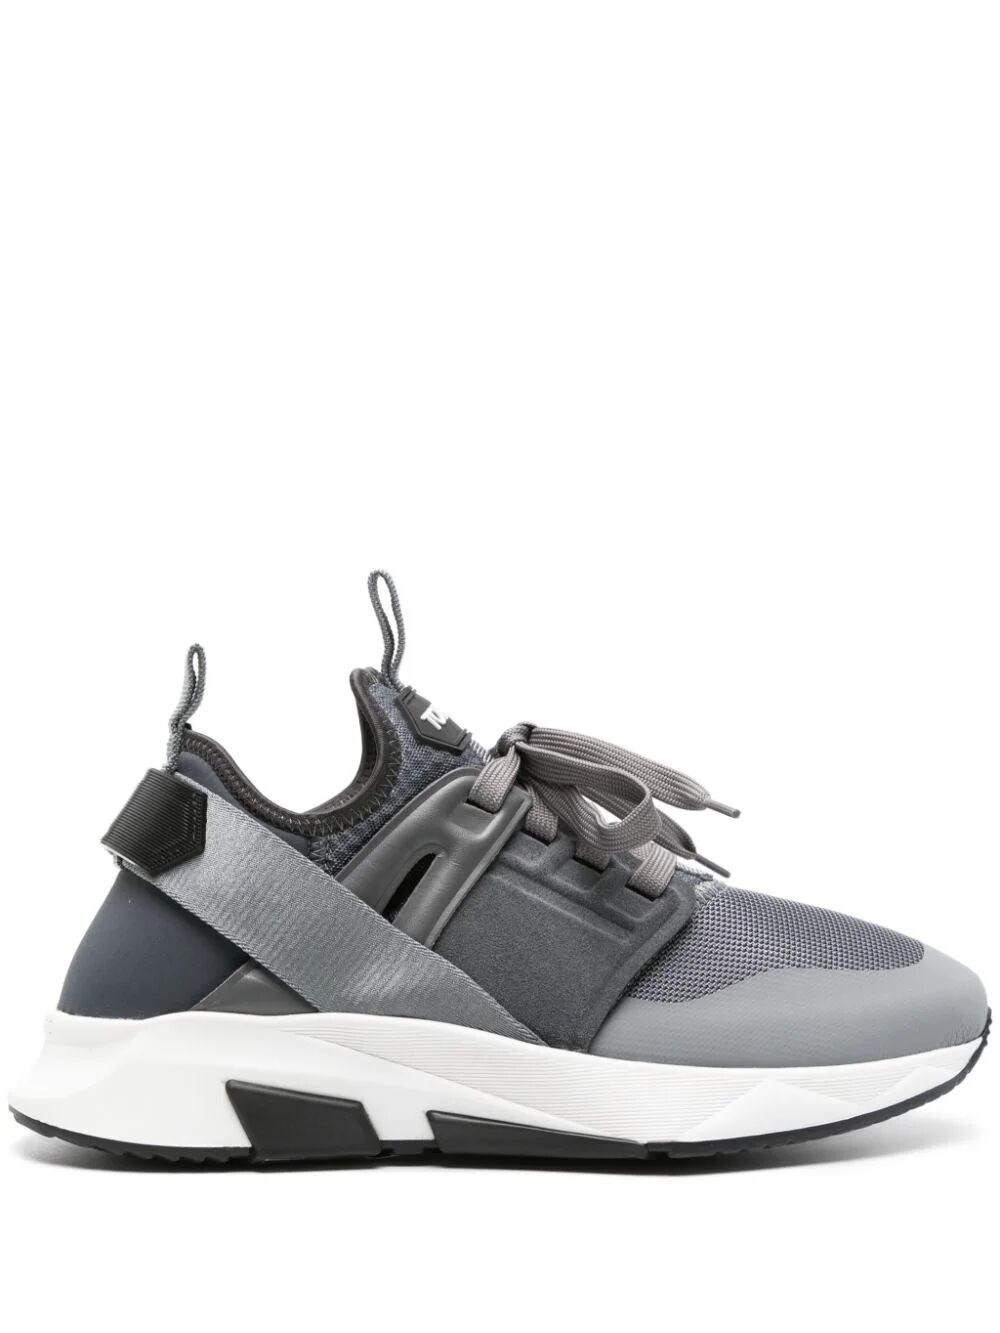 Shop Tom Ford Neoprene Suede Jago Sneakers In Grey